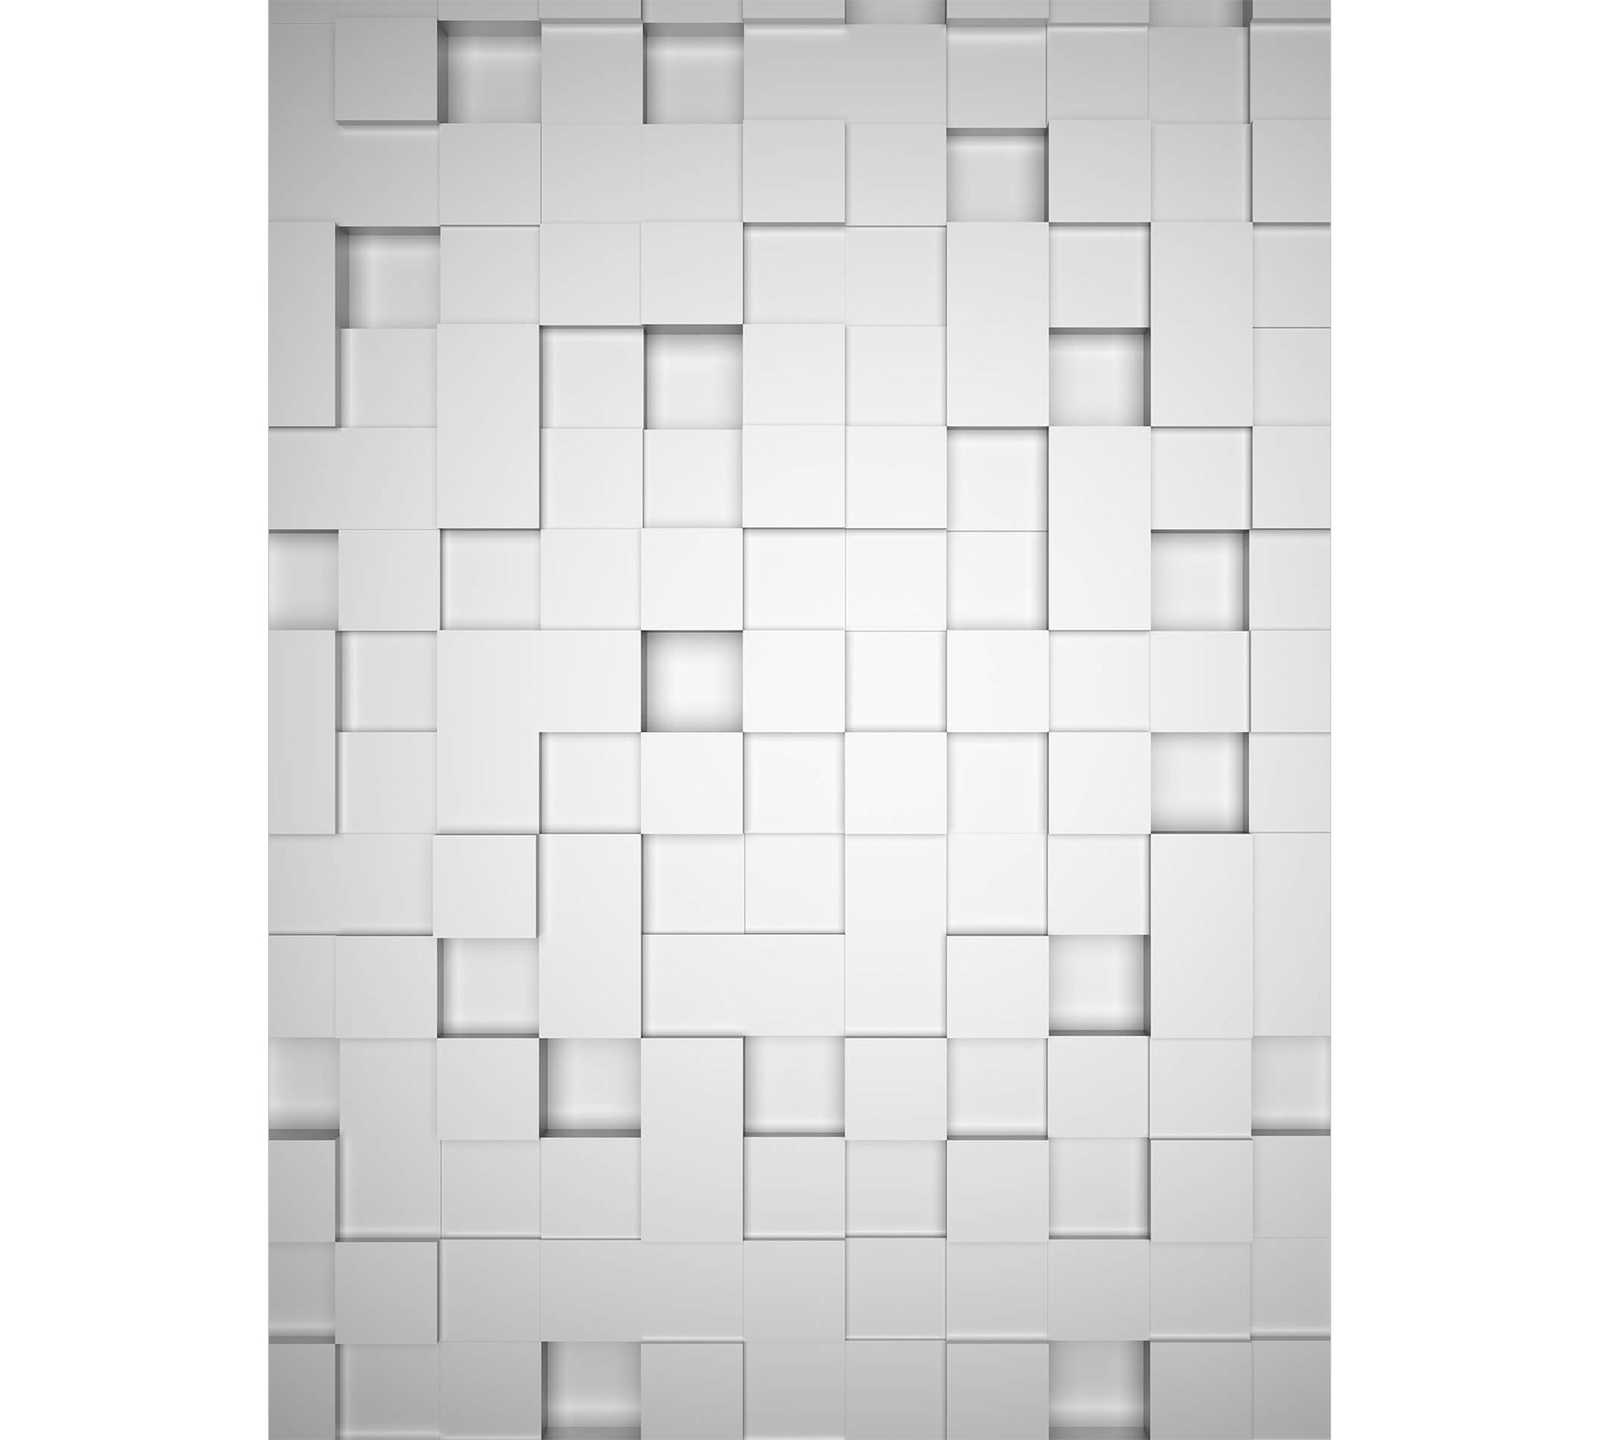             Fototapete 3D Würfel-Muster im Hochformat – Weiß, Grau
        